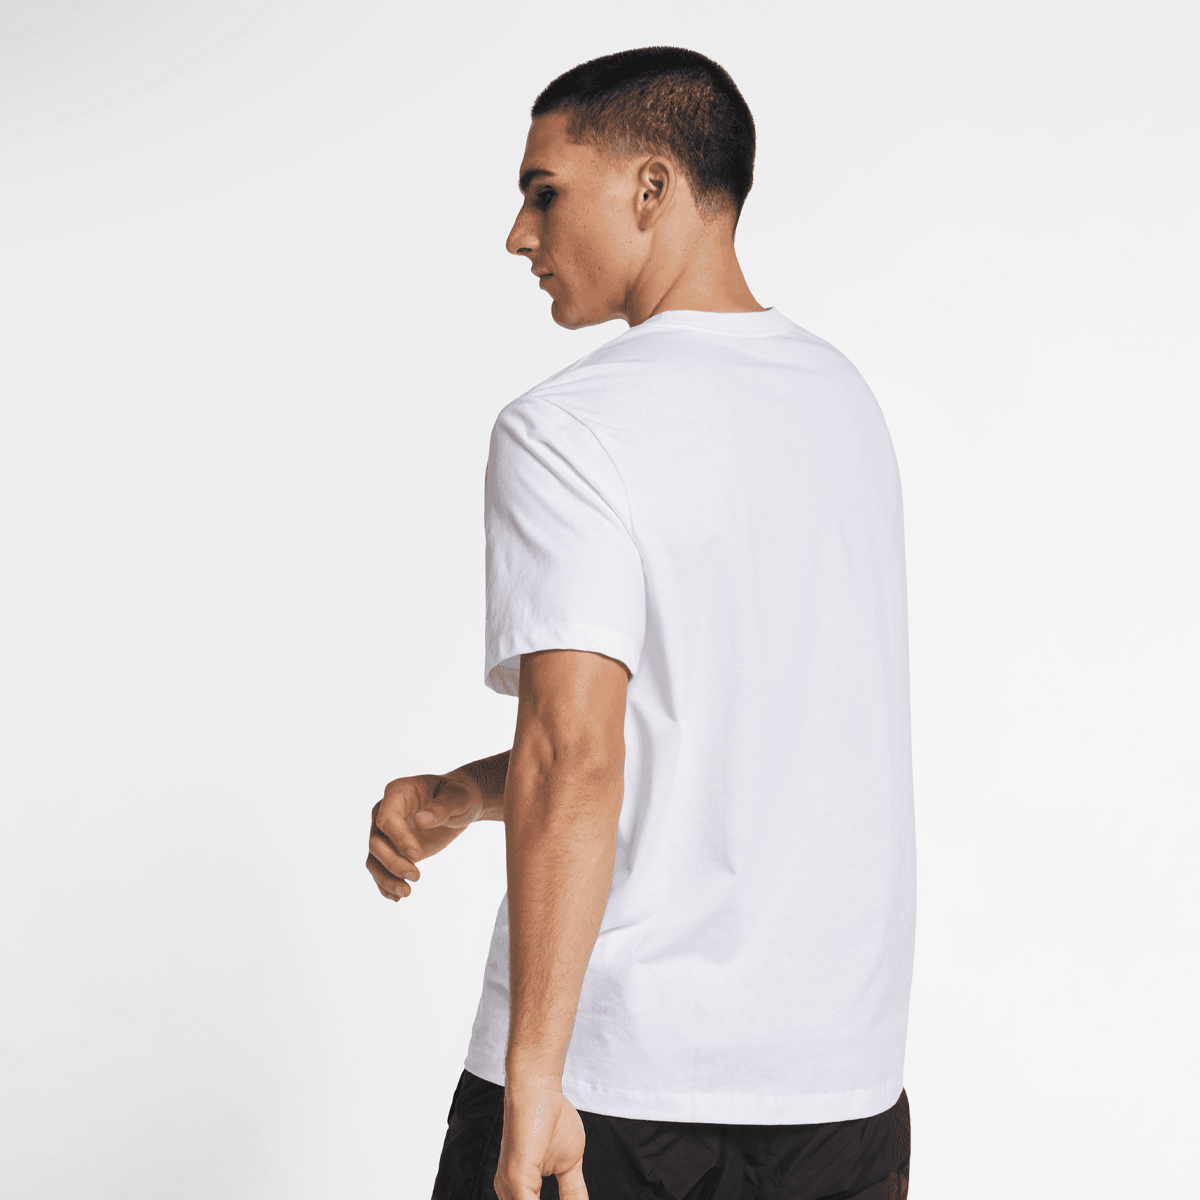 Jordan Jumpman Flight High Brand Read Tee T-shirts Heren white black maat: M beschikbare maaten:S M L XL